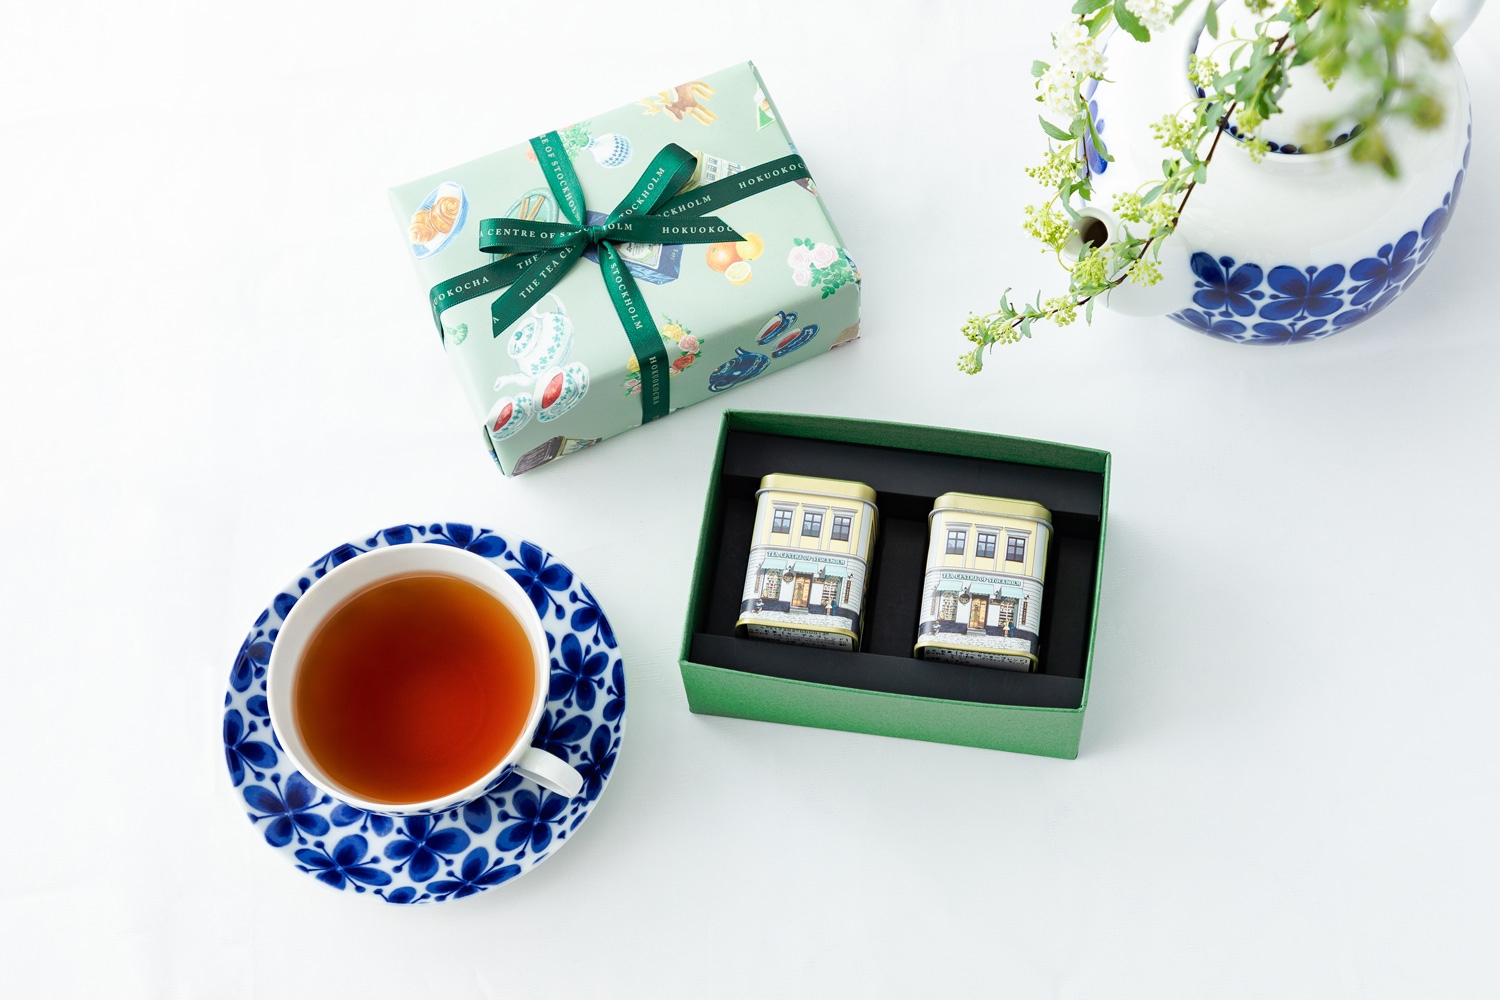 北欧紅茶 ミニ缶2個セット ギフトBOXタイプ（セーデルブレンド・アールグレイスペシャル）-北欧紅茶オフィシャルサイト